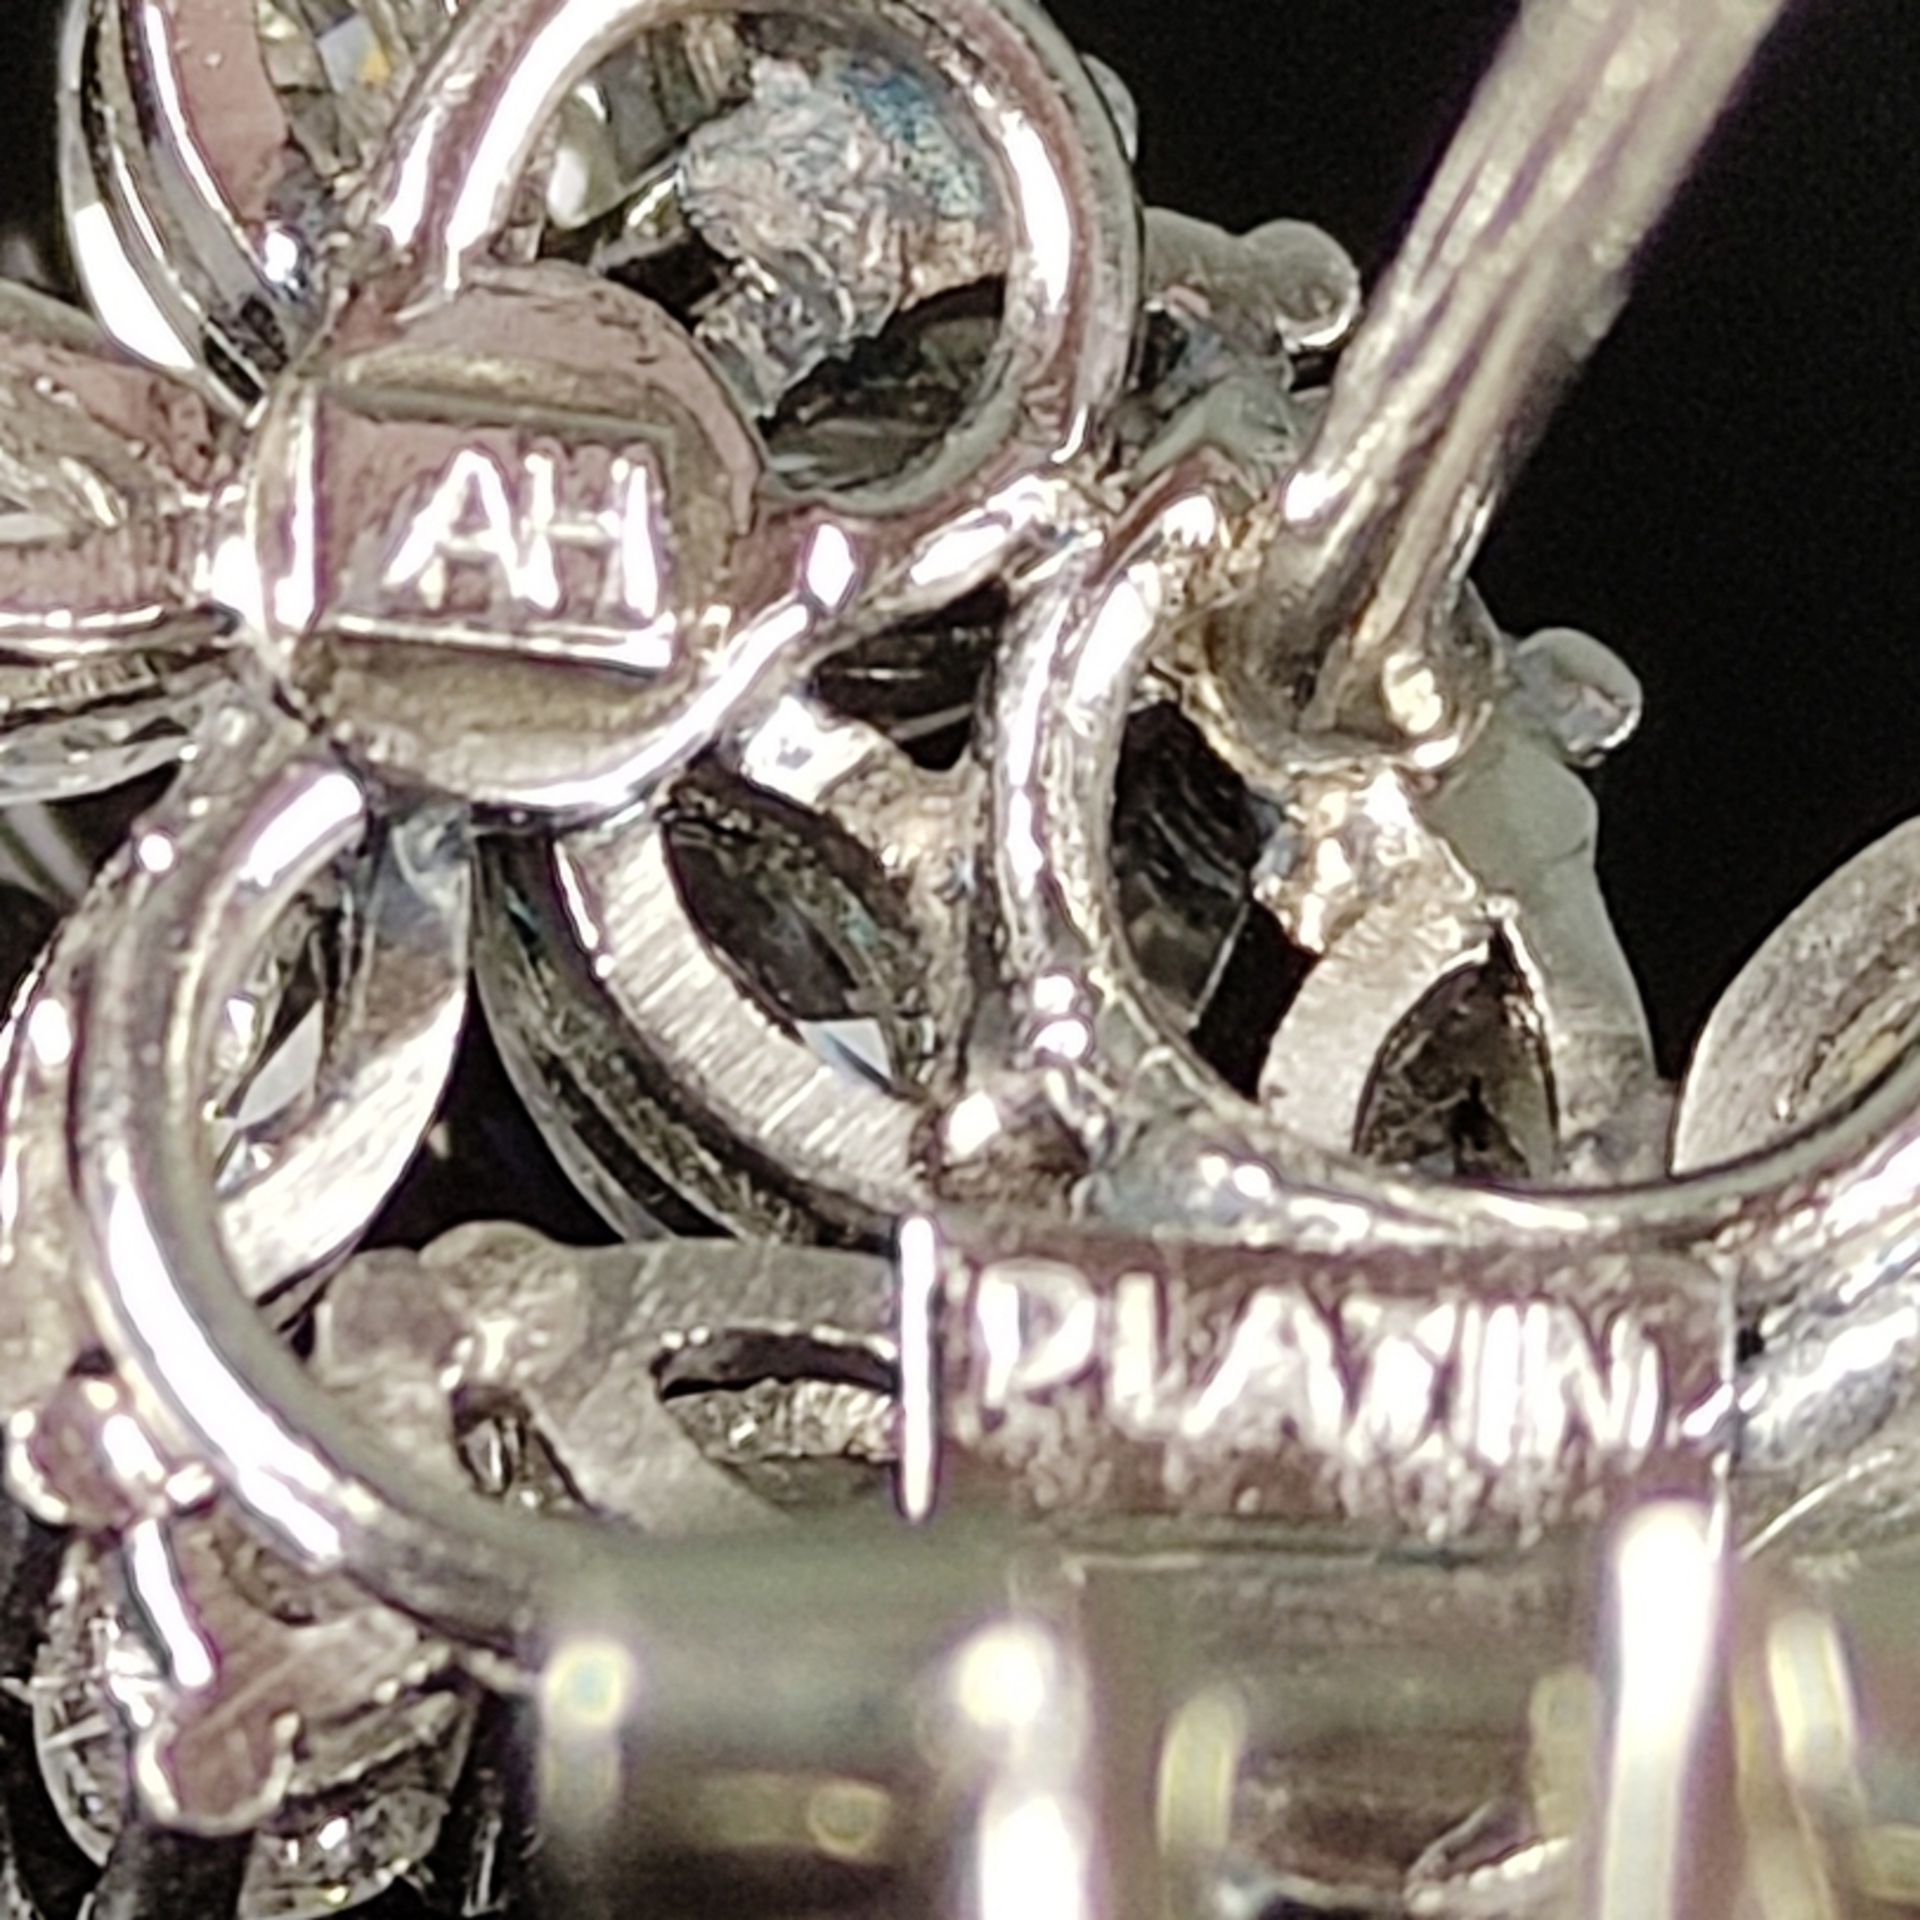 Paar exklusive Diamant-Perl-Ohrstecker, 950 Platin (punziert), Gesamtgewicht 10,24g, oberer Teil au - Bild 3 aus 3